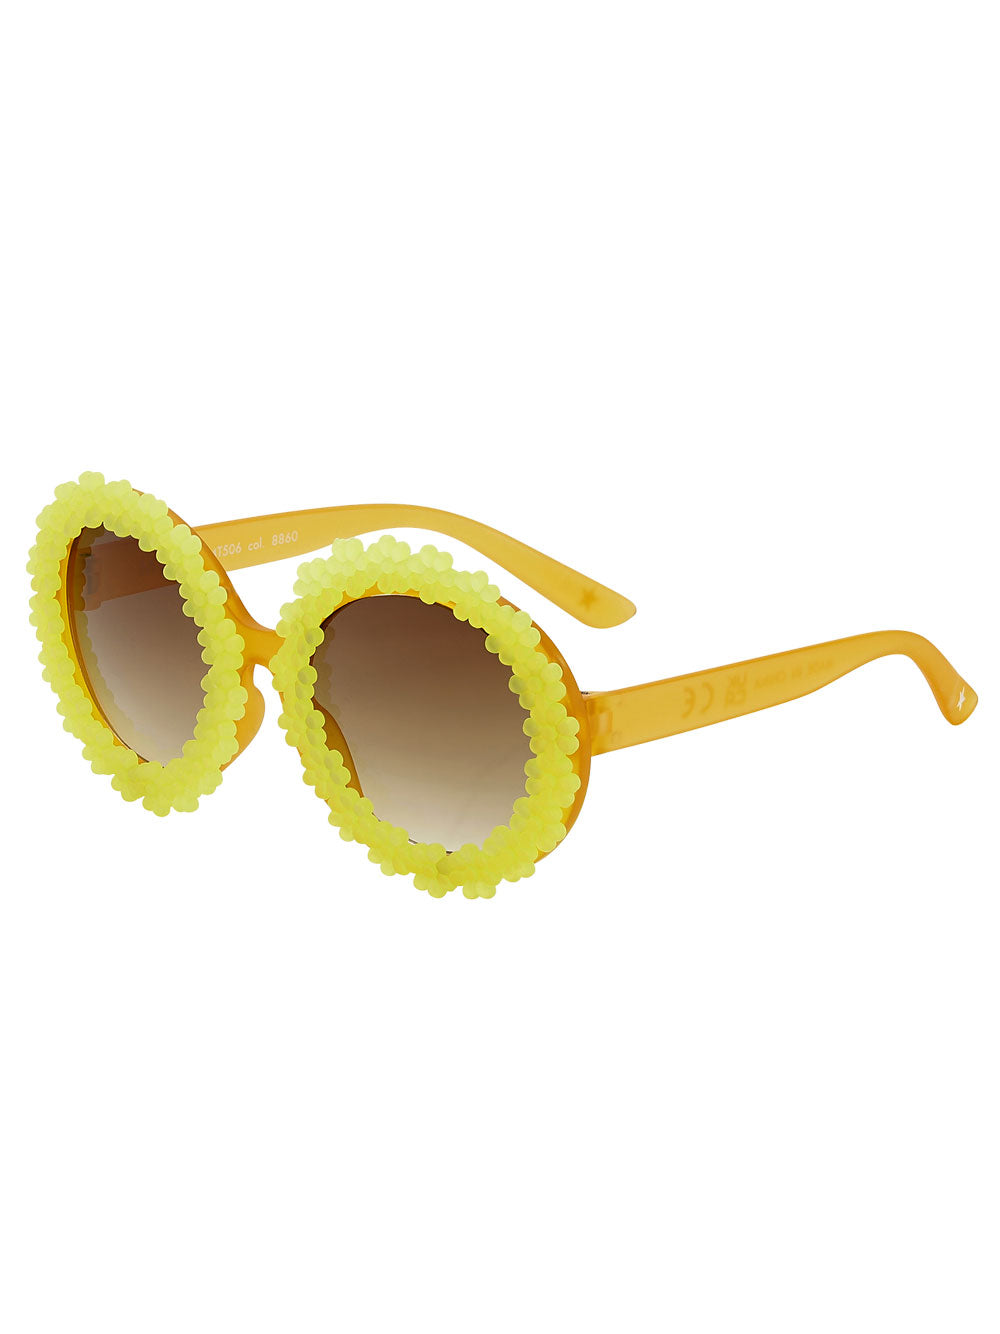 Silly Sour Lemon Sunglasses